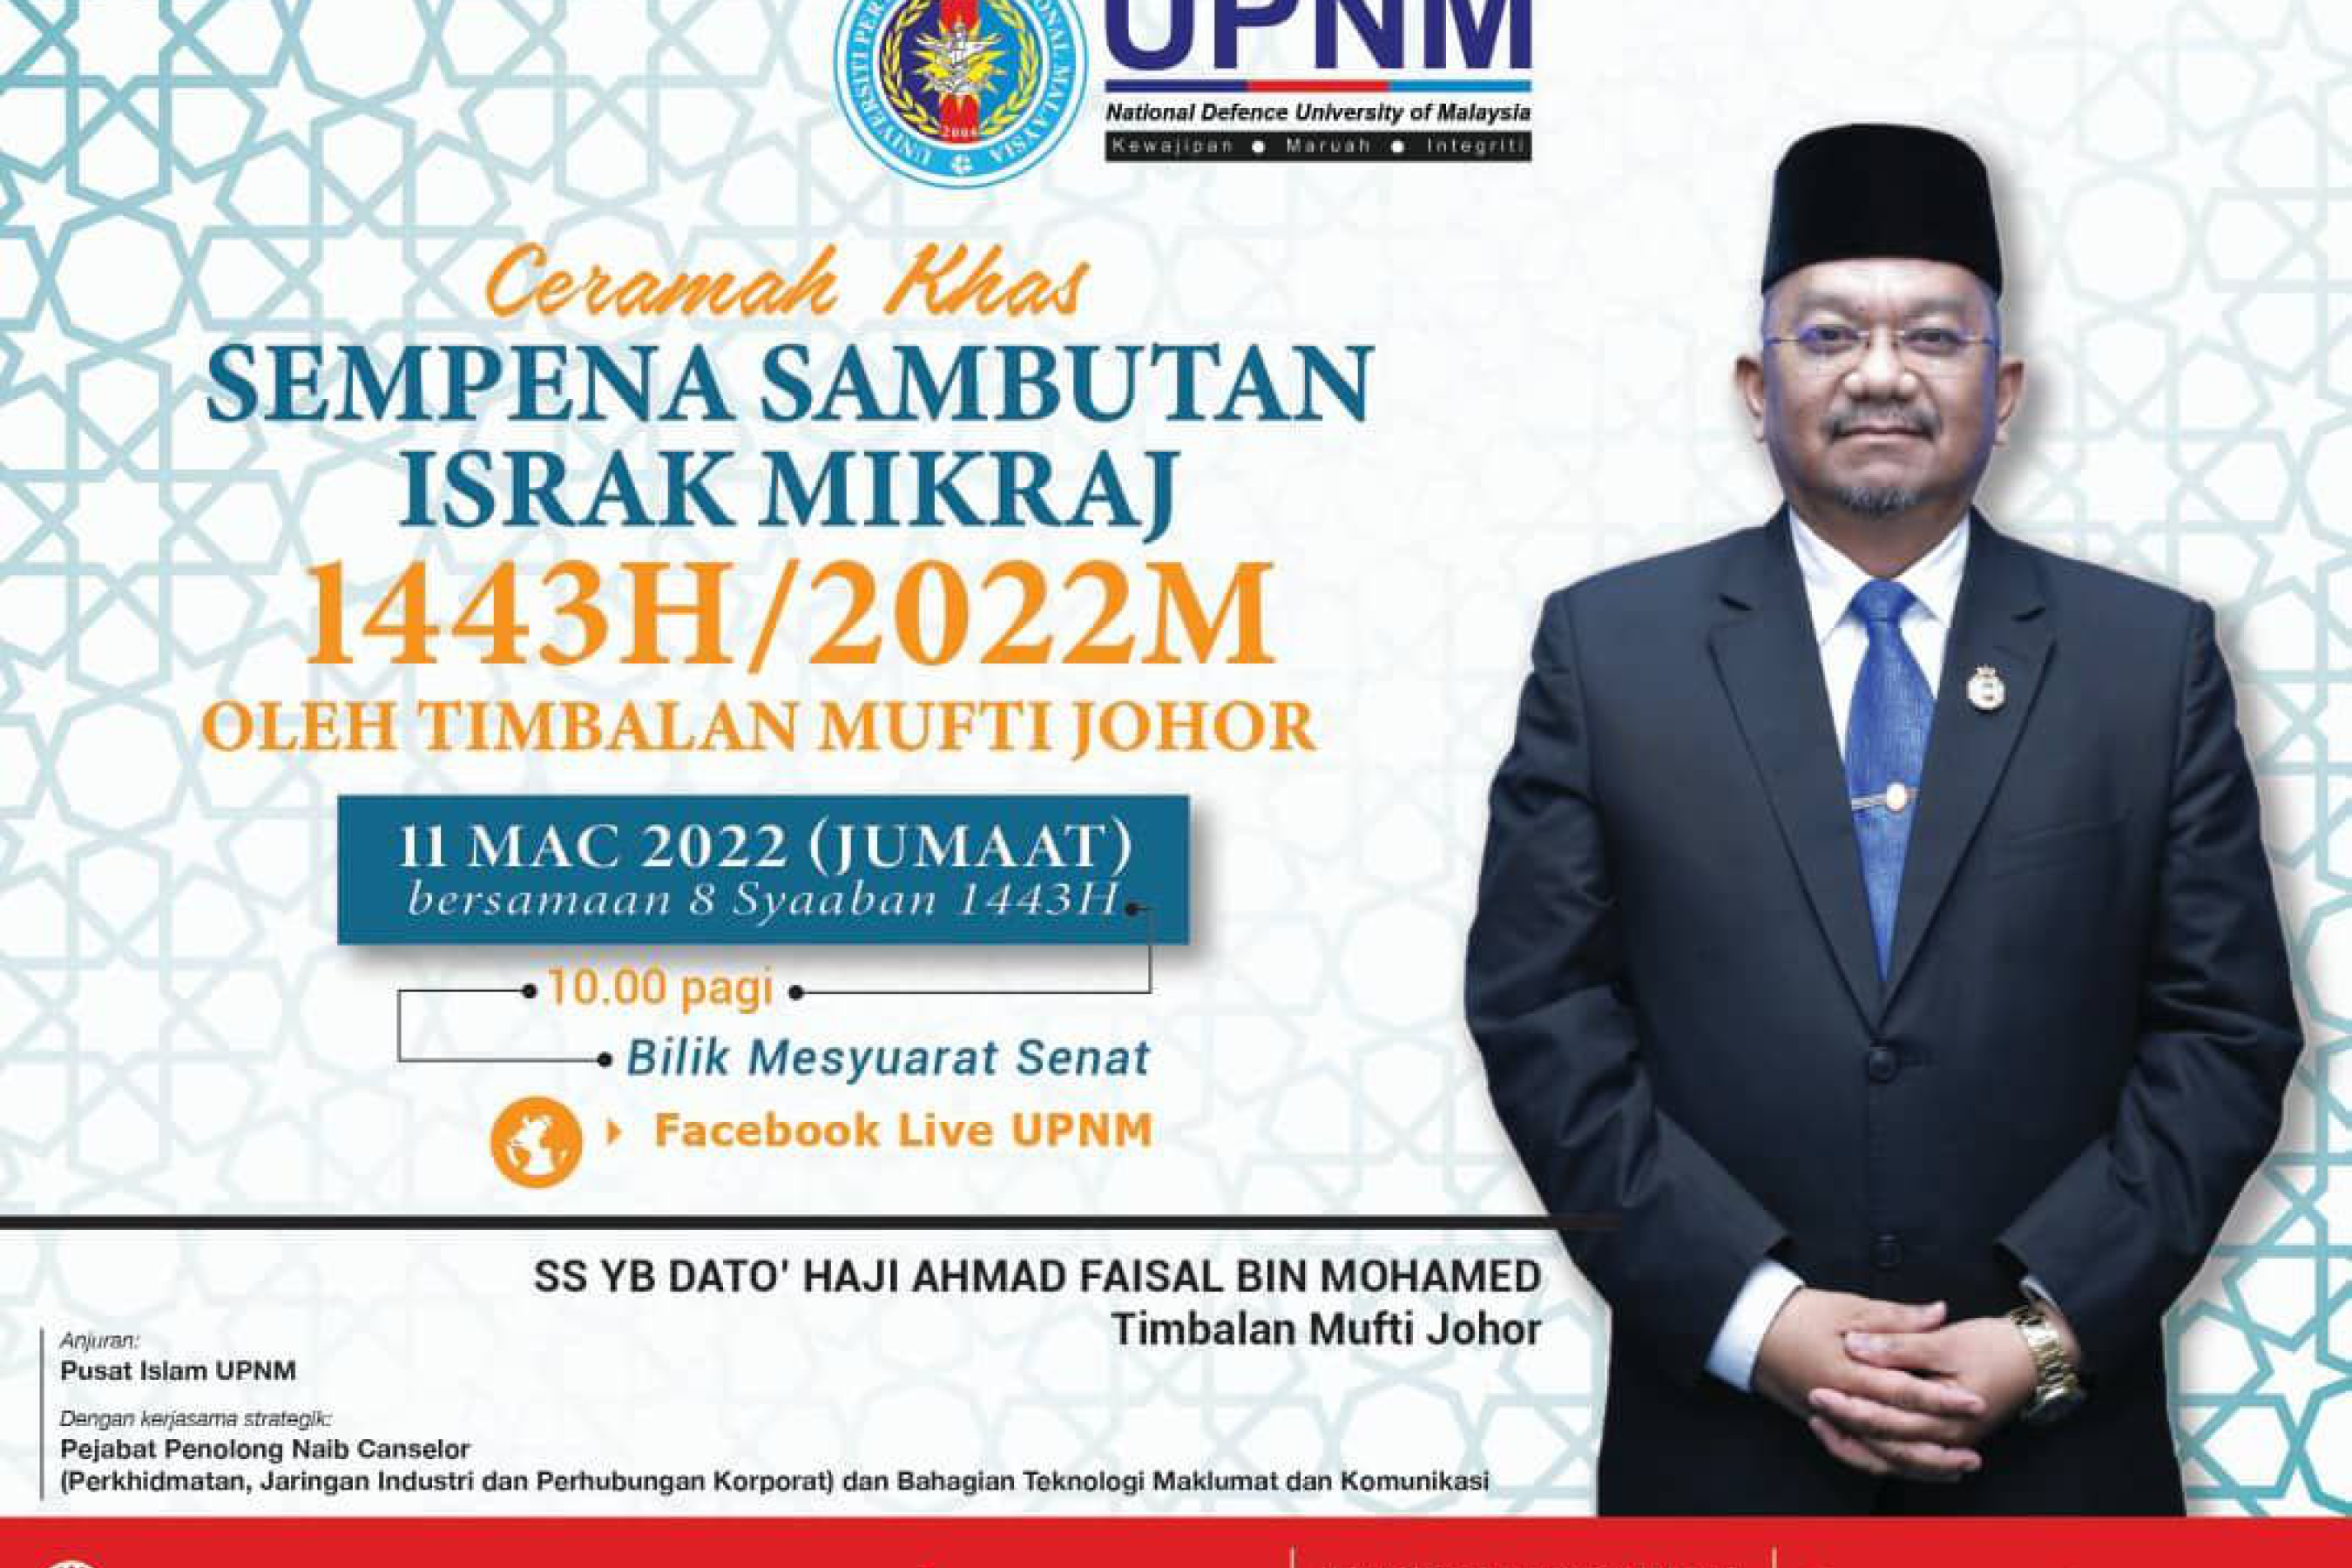 Ceramah Khas Sempena Sambutan Israk Mikraj 1443H/2022M oleh Timbalan Mufti Johor